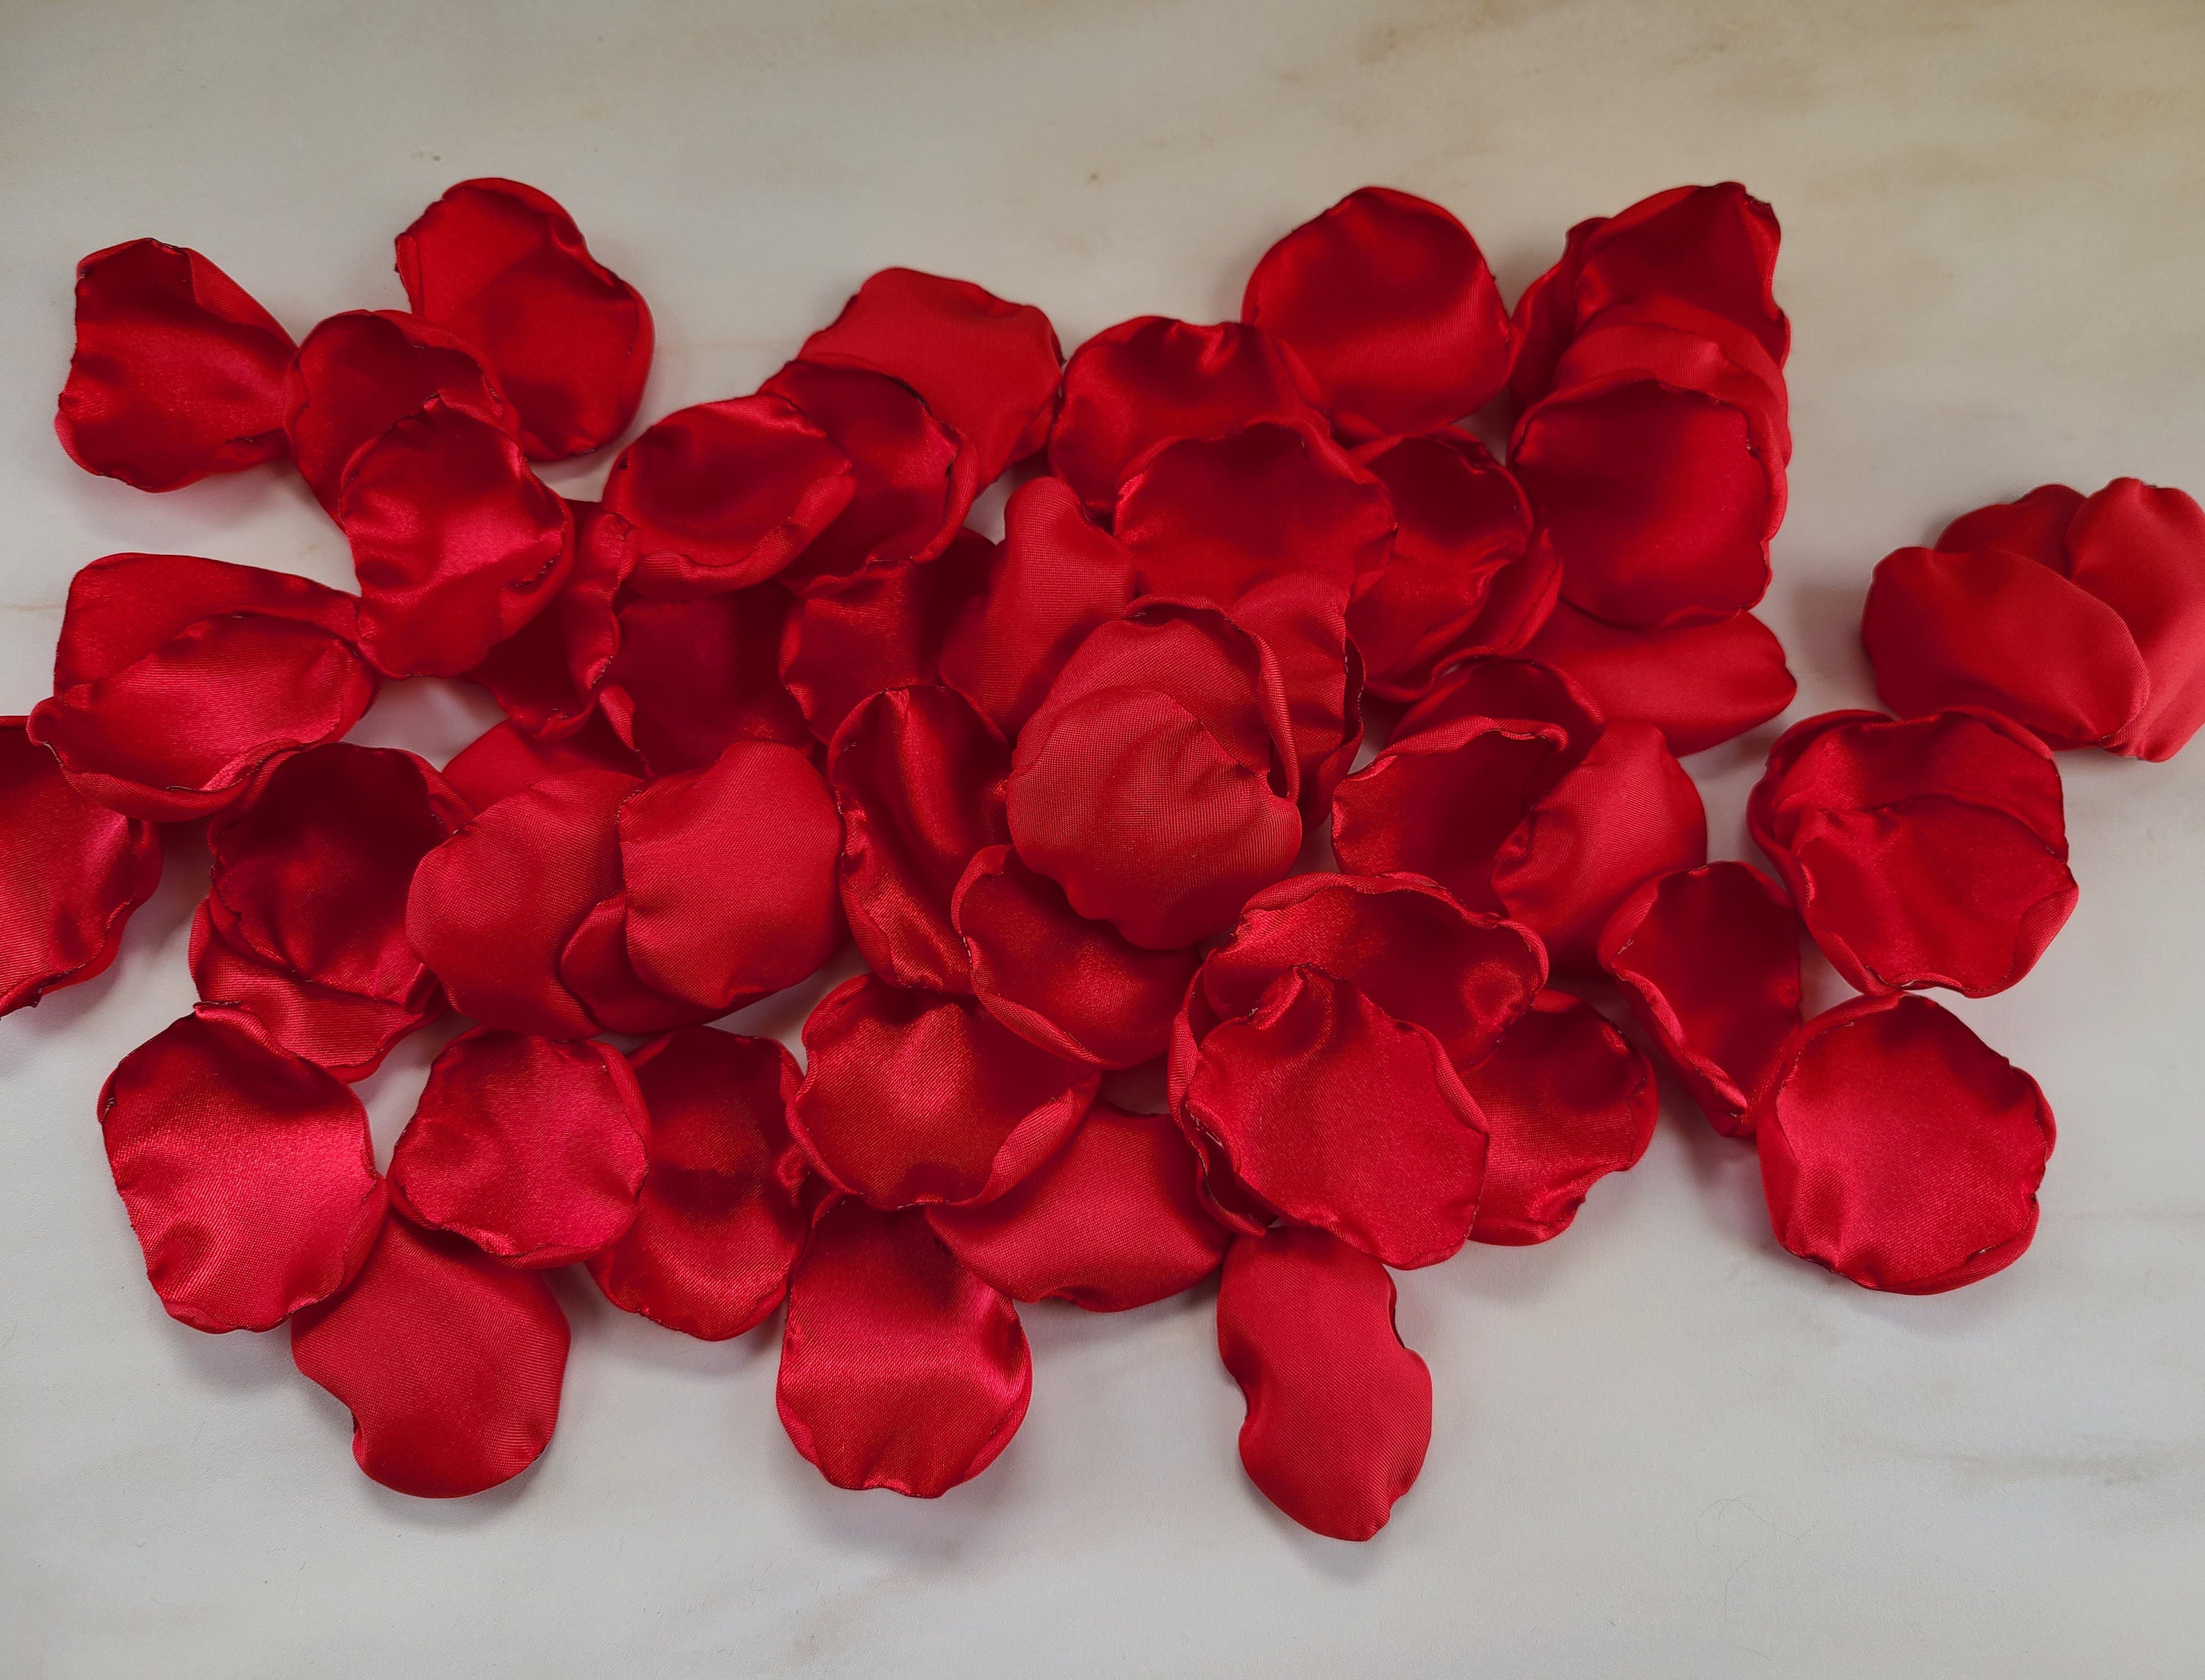 Corazón en escultura de 200 rosas blancas contorno rojo caja blanca